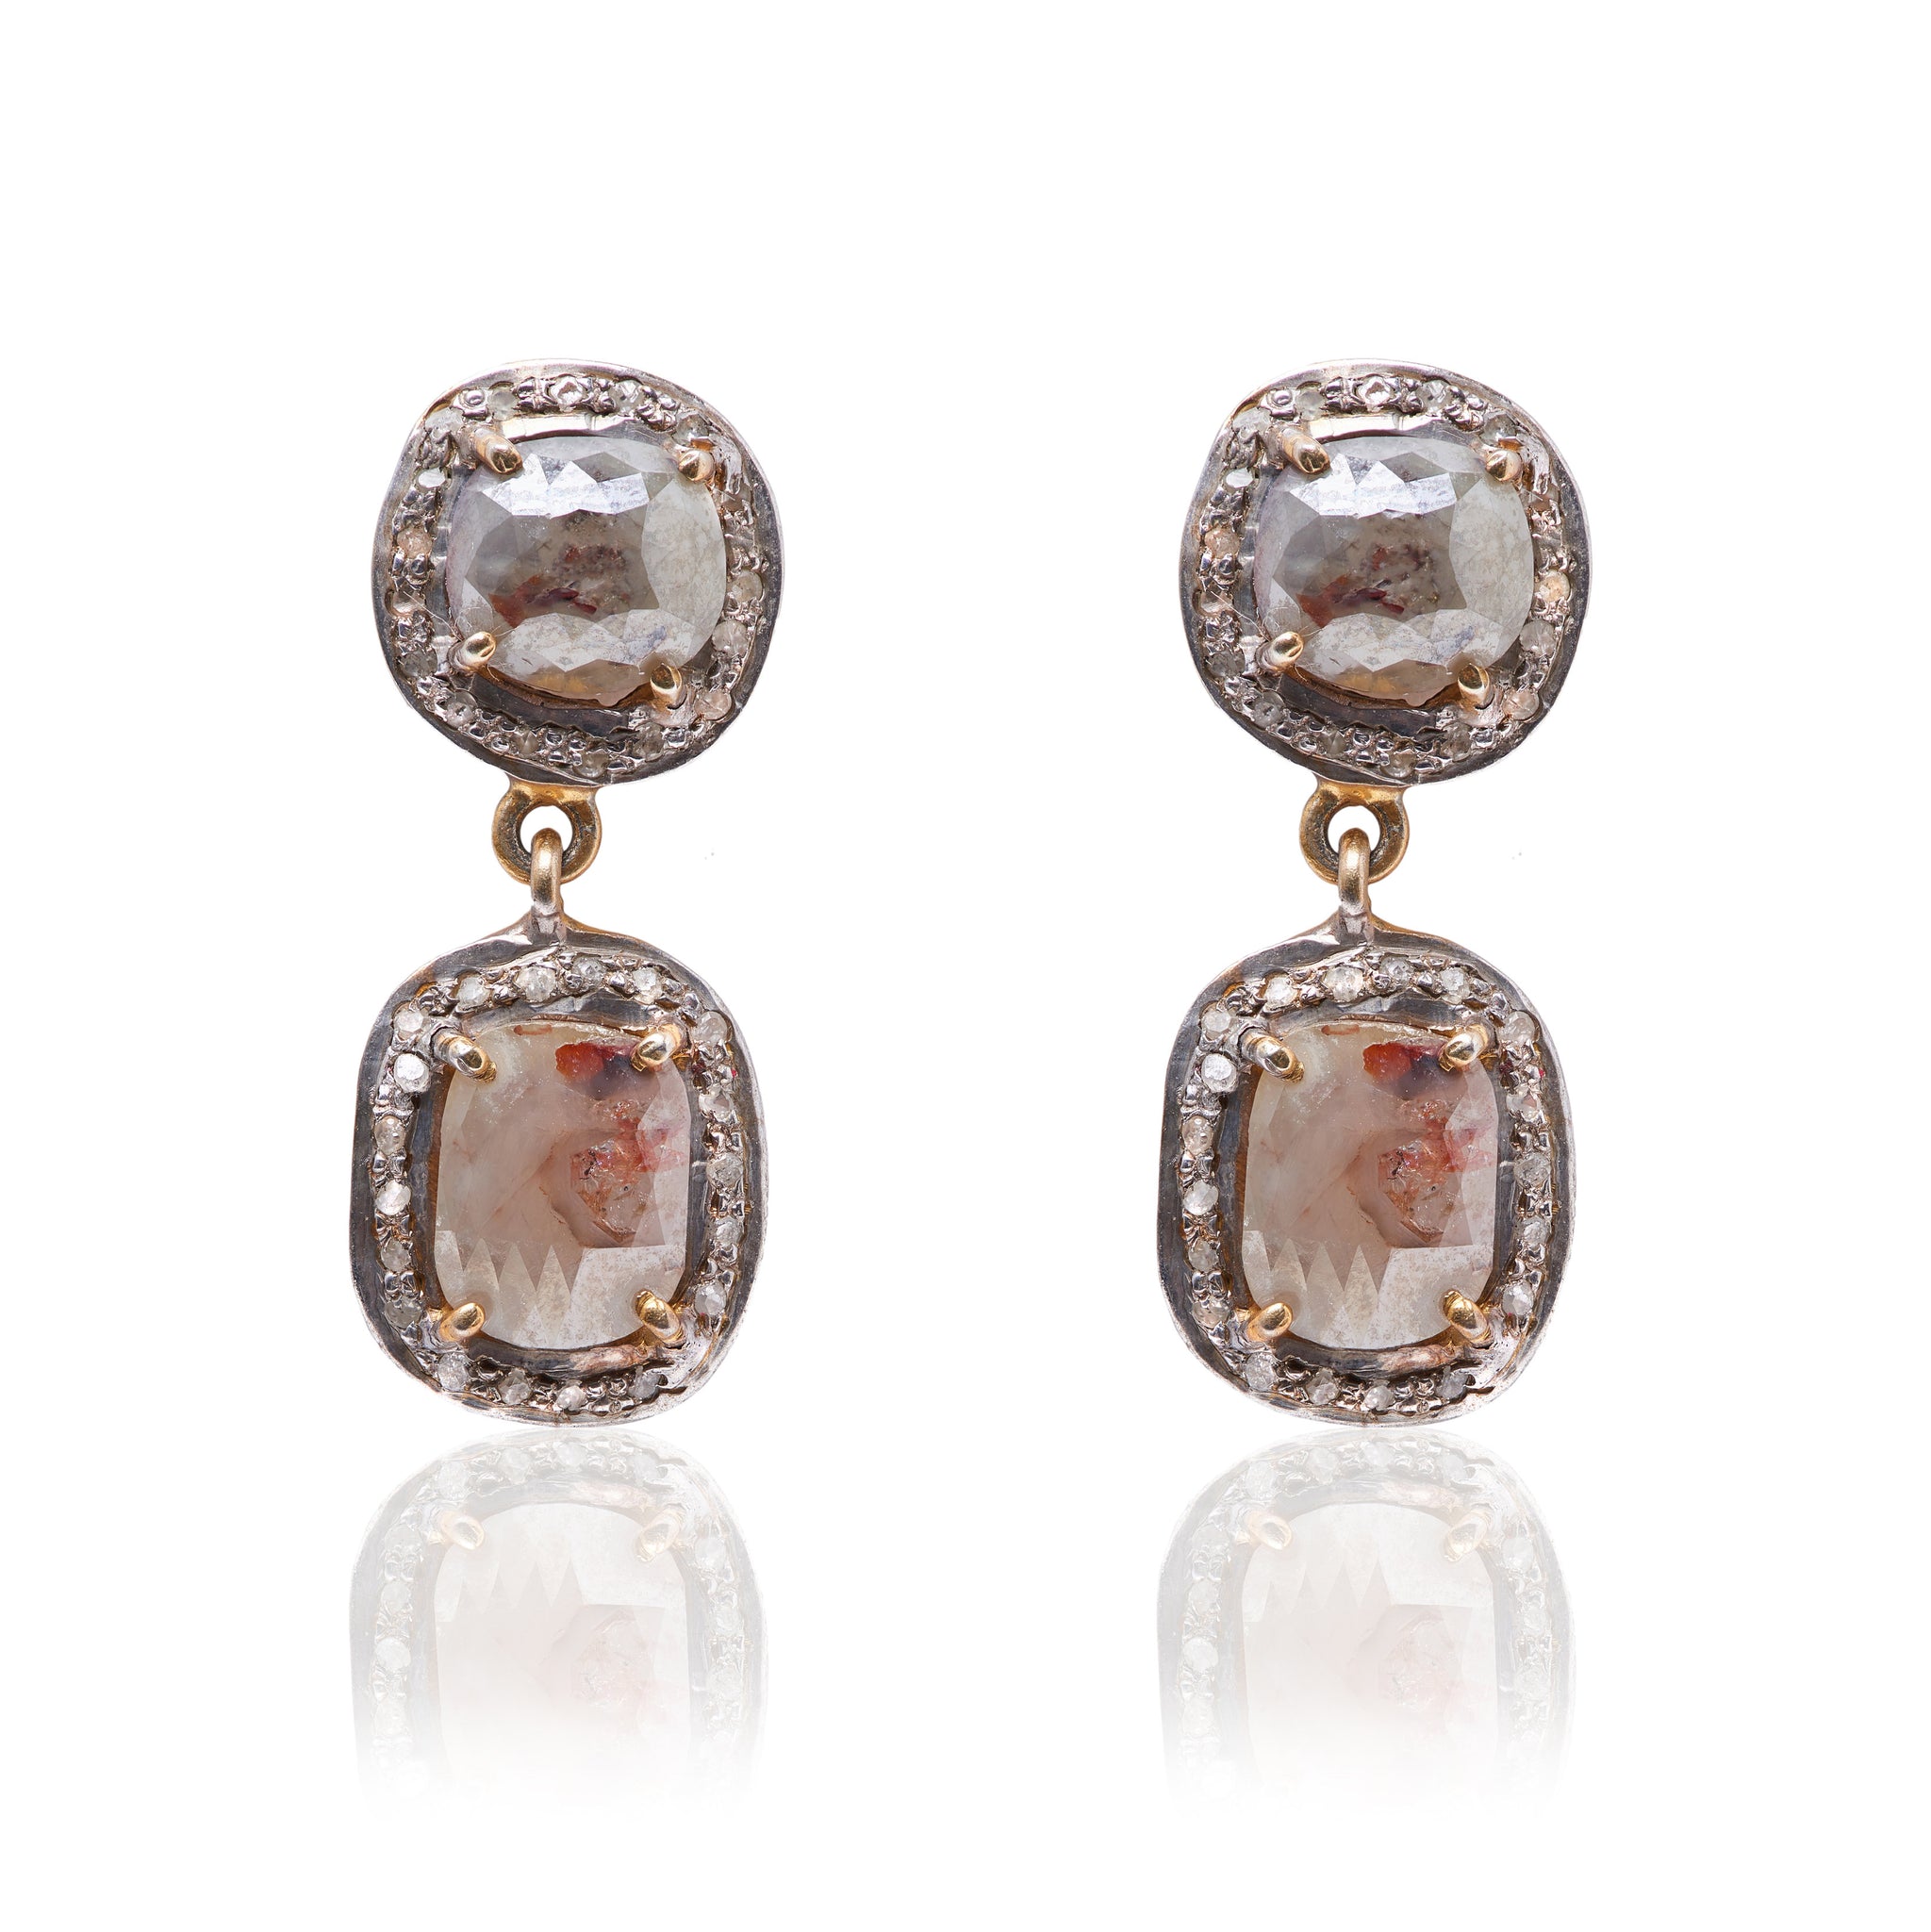 Double cognac diamond earrings set in 14k Yellow Gold